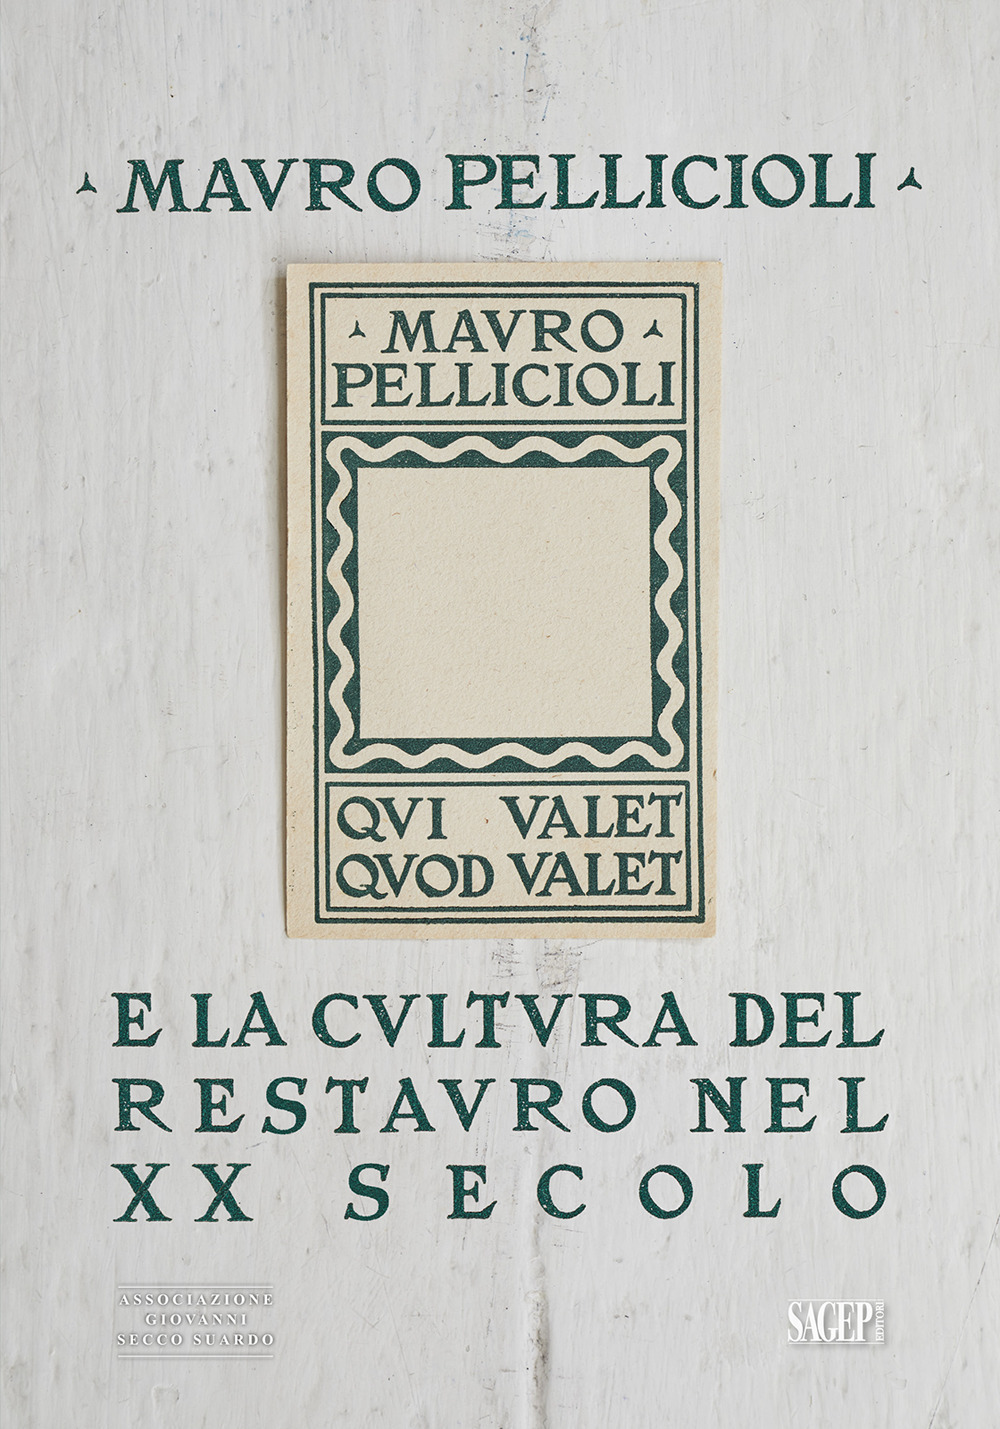 Mauro Pelliccioli e la cultura del restauro nel XX secolo